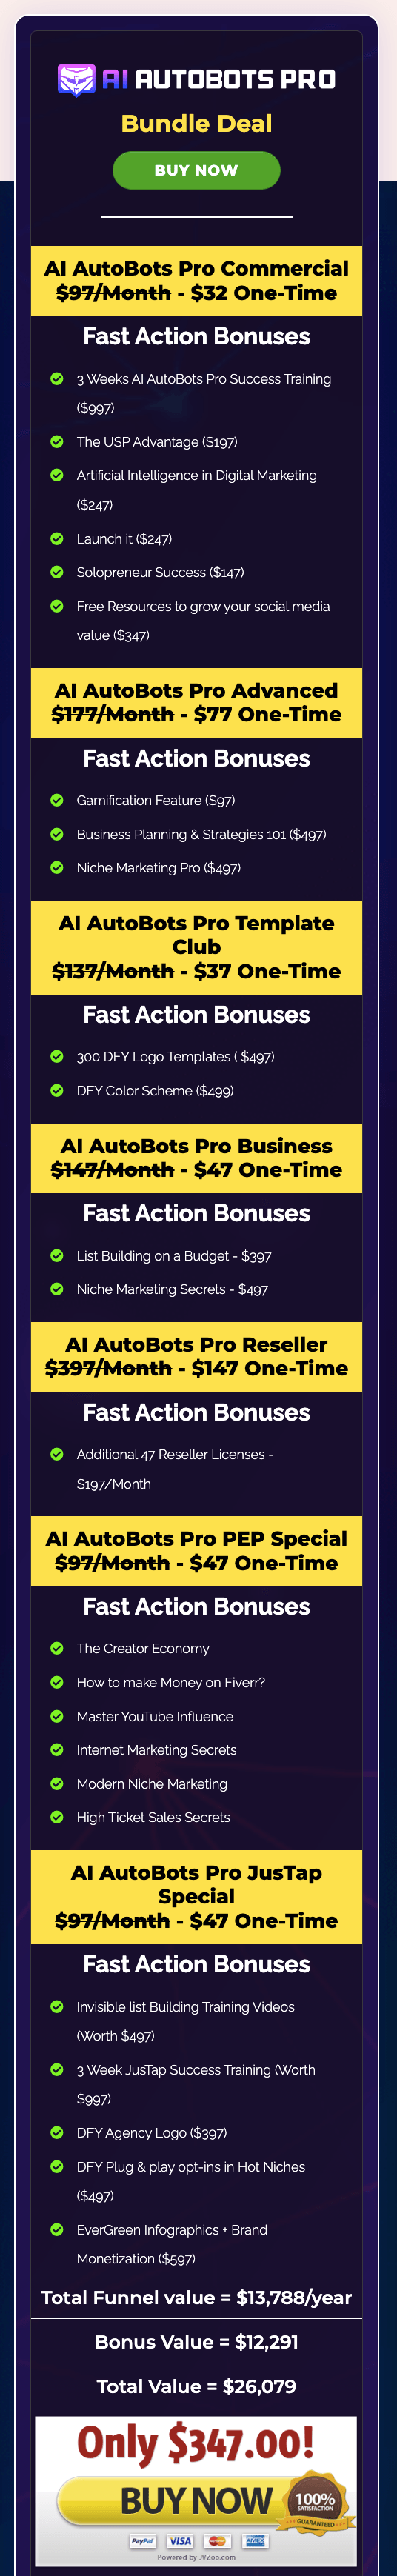 AI-AutoBots-Pro-Bundle